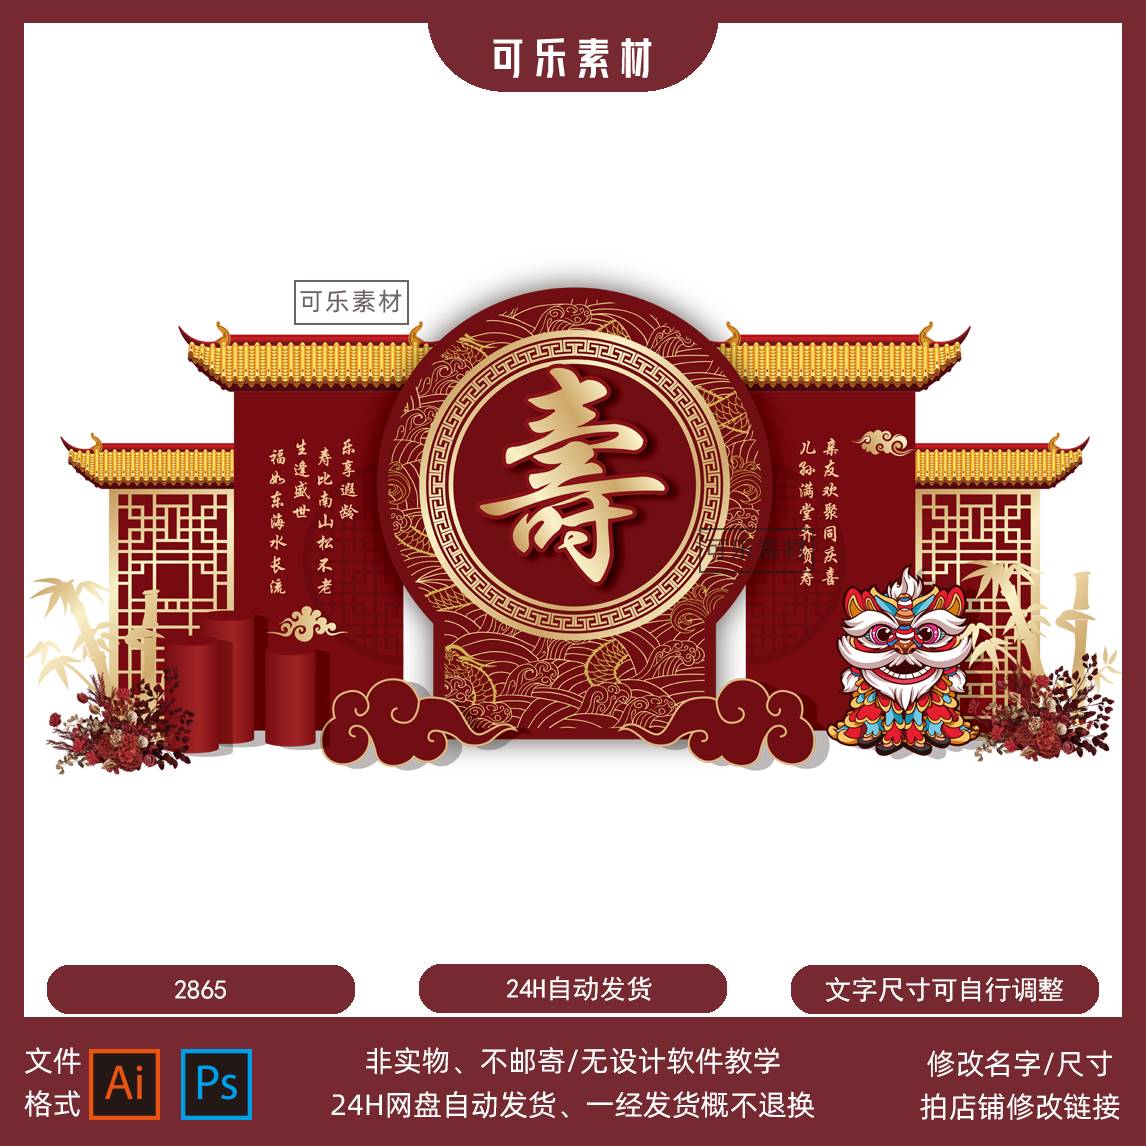 SY07中式主题红色父母长辈老人生日八十寿宴庆典舞台背景设计素材